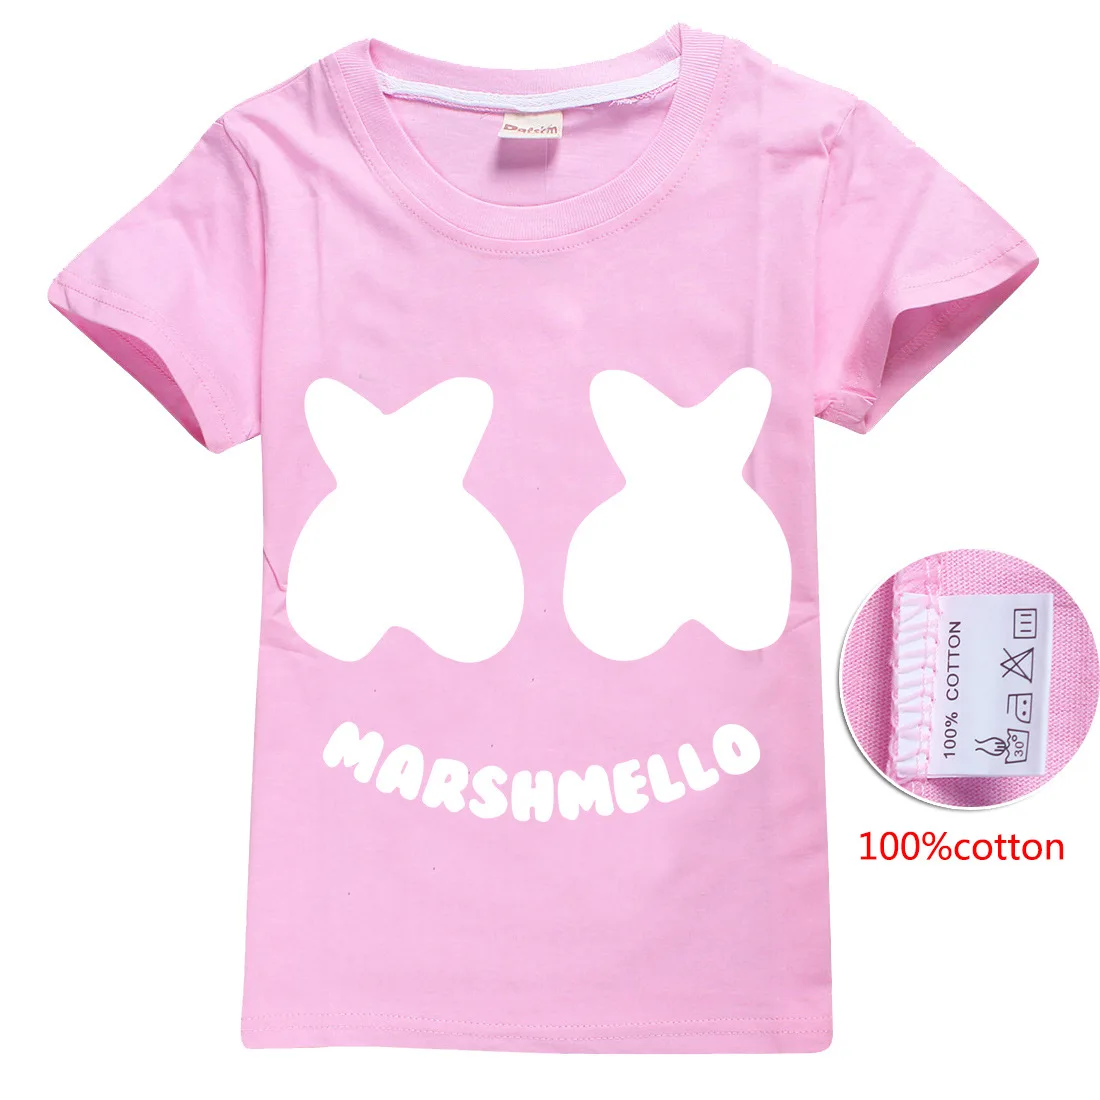 Натуральный хлопок! Marshmello/футболка детская летняя футболка с короткими рукавами для крупных детей 8429 - Цвет: B00015-Pink